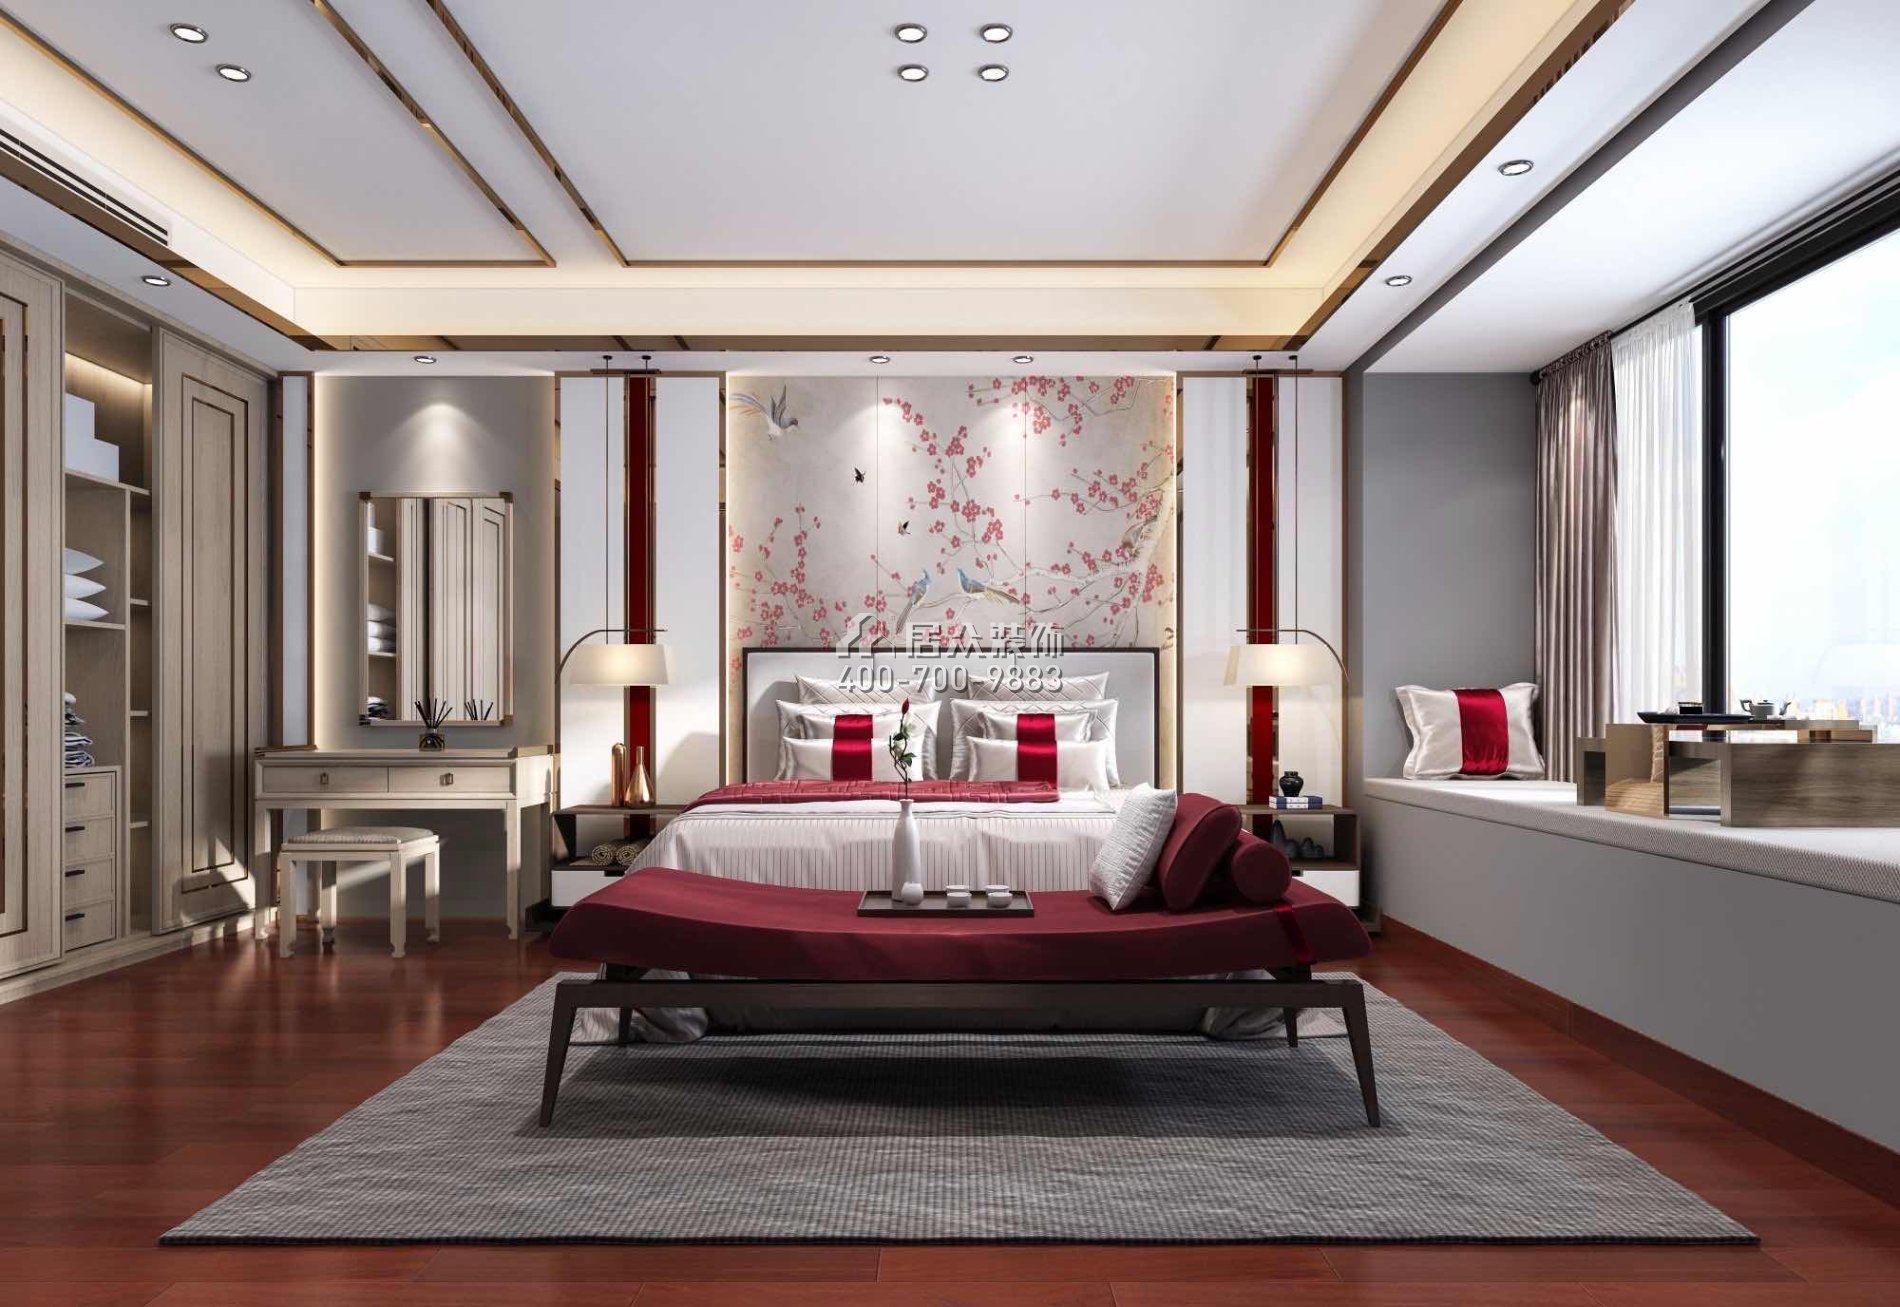 广东省珠海市香洲区216平方米中式风格平层户型卧室装修效果图